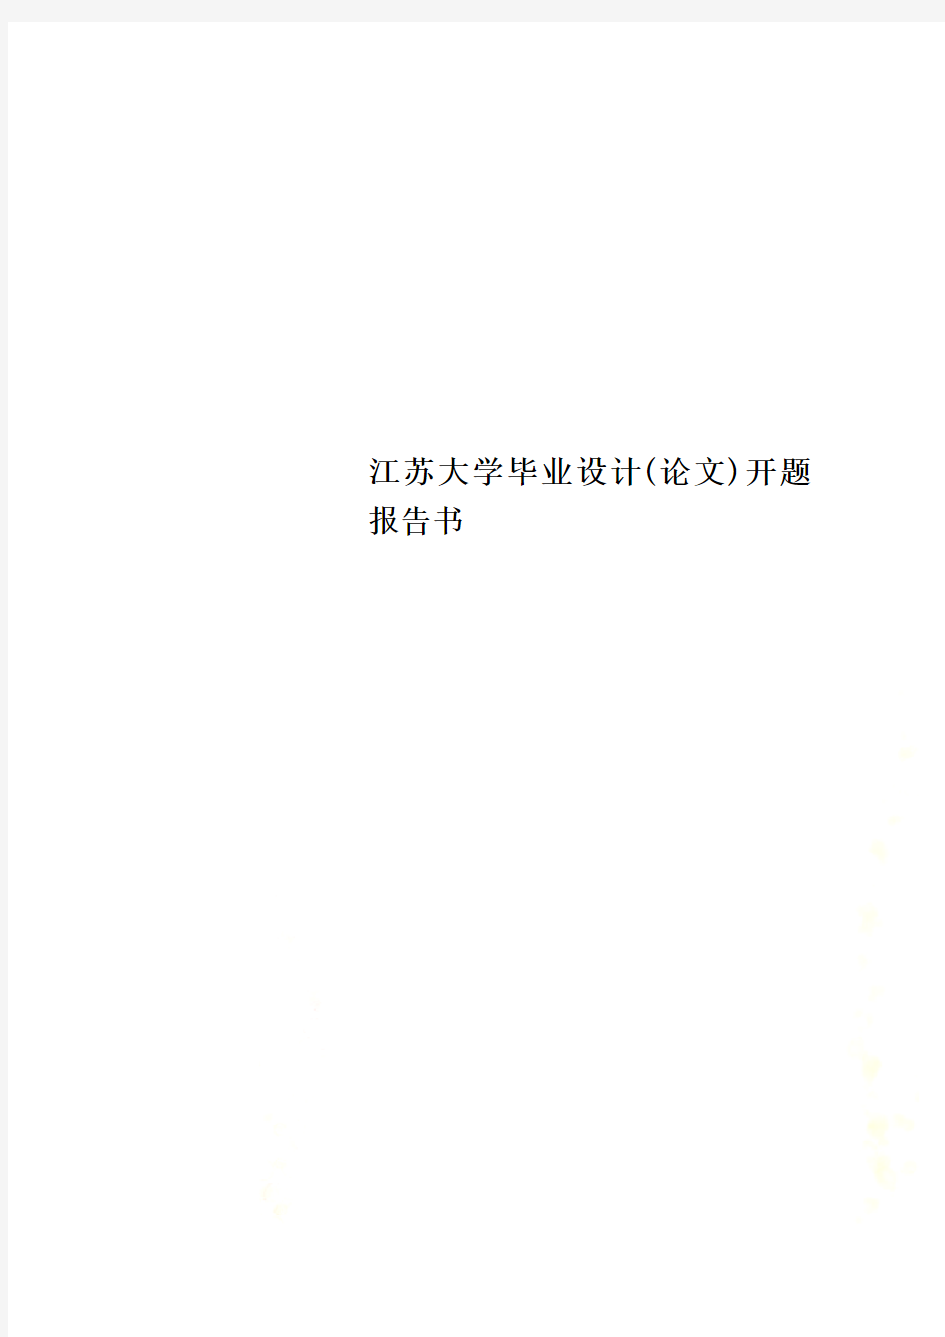 江苏大学毕业设计(论文)开题报告书